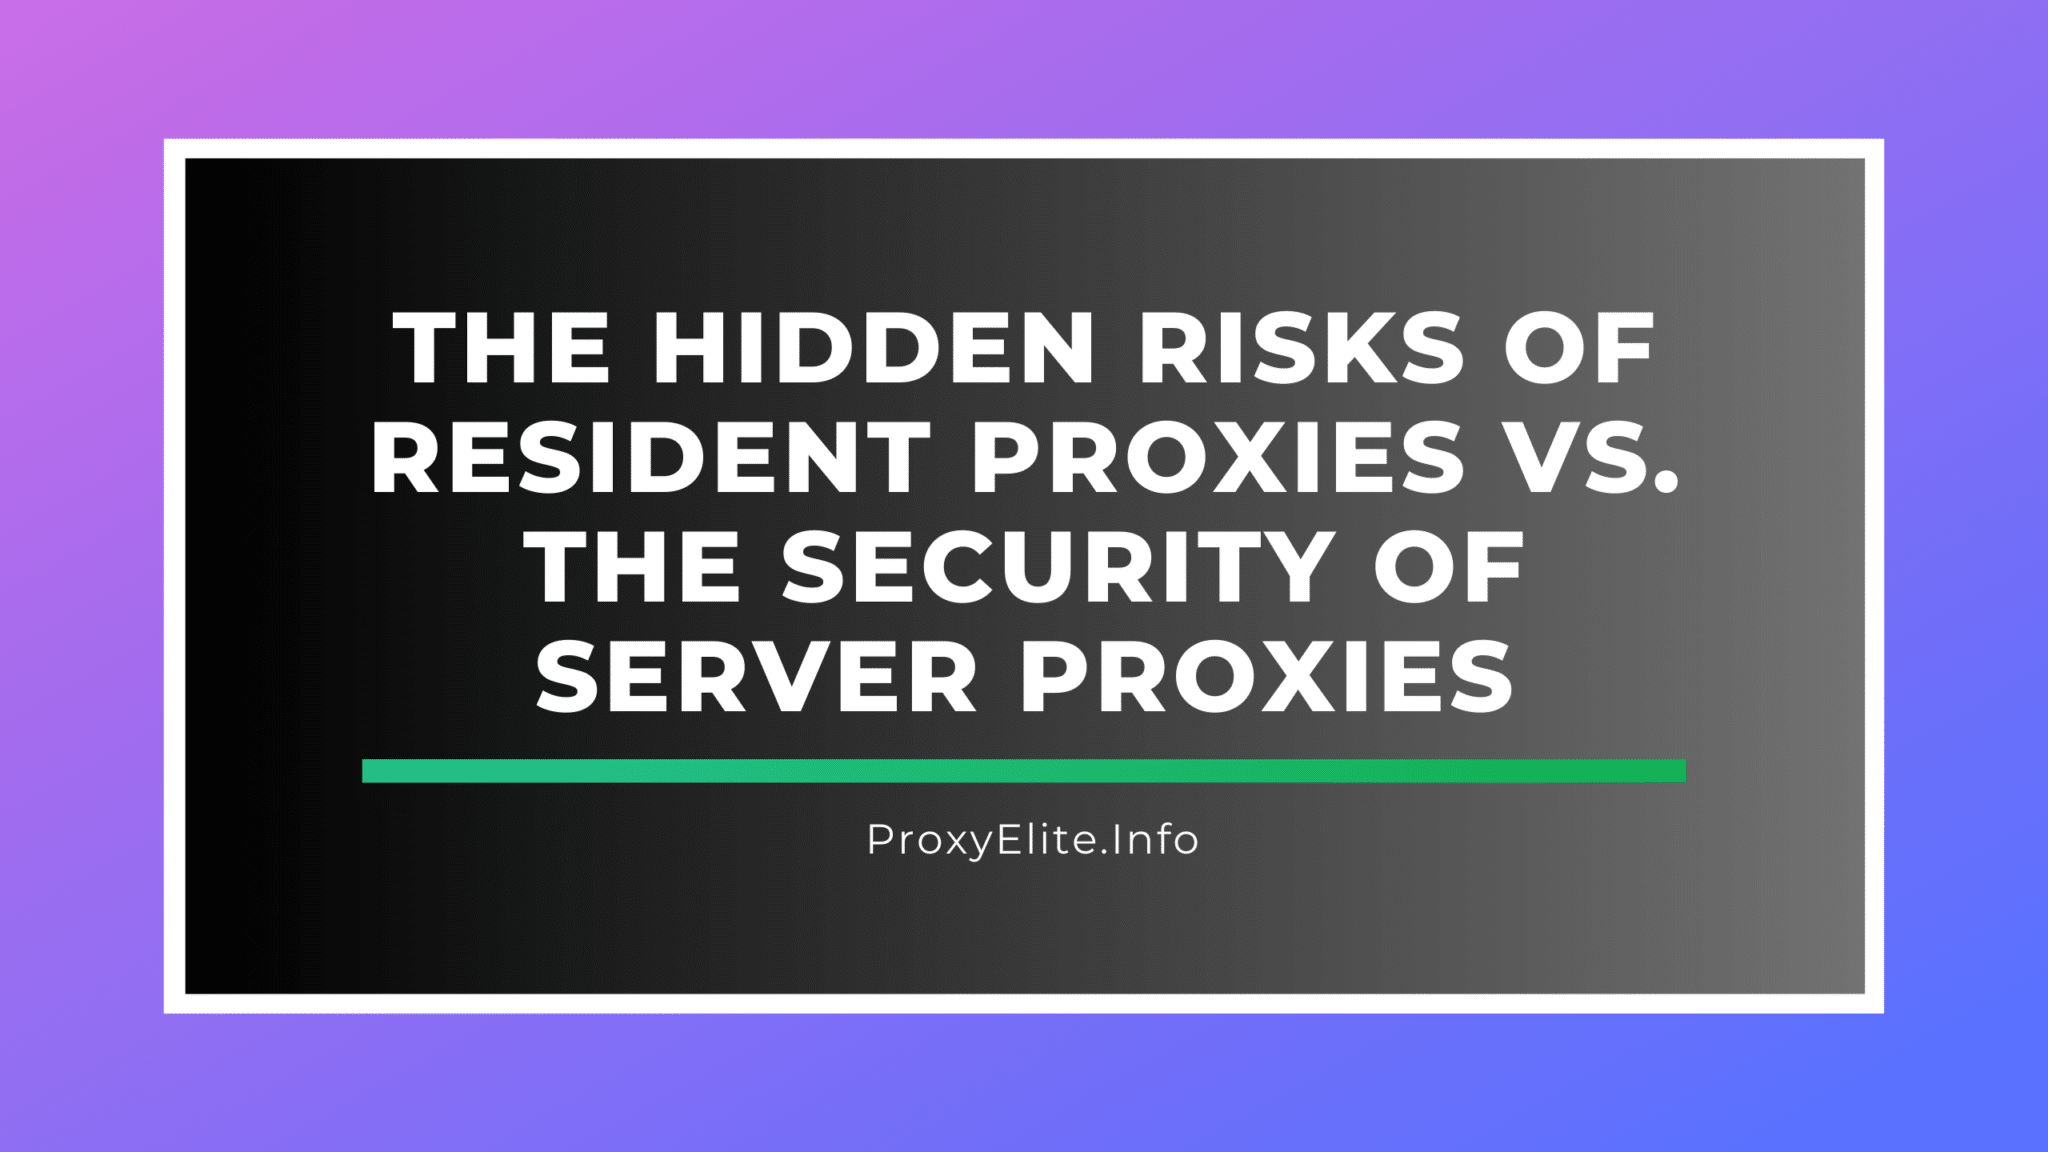 Los riesgos ocultos de los servidores proxy frente a la seguridad de los servidores proxy